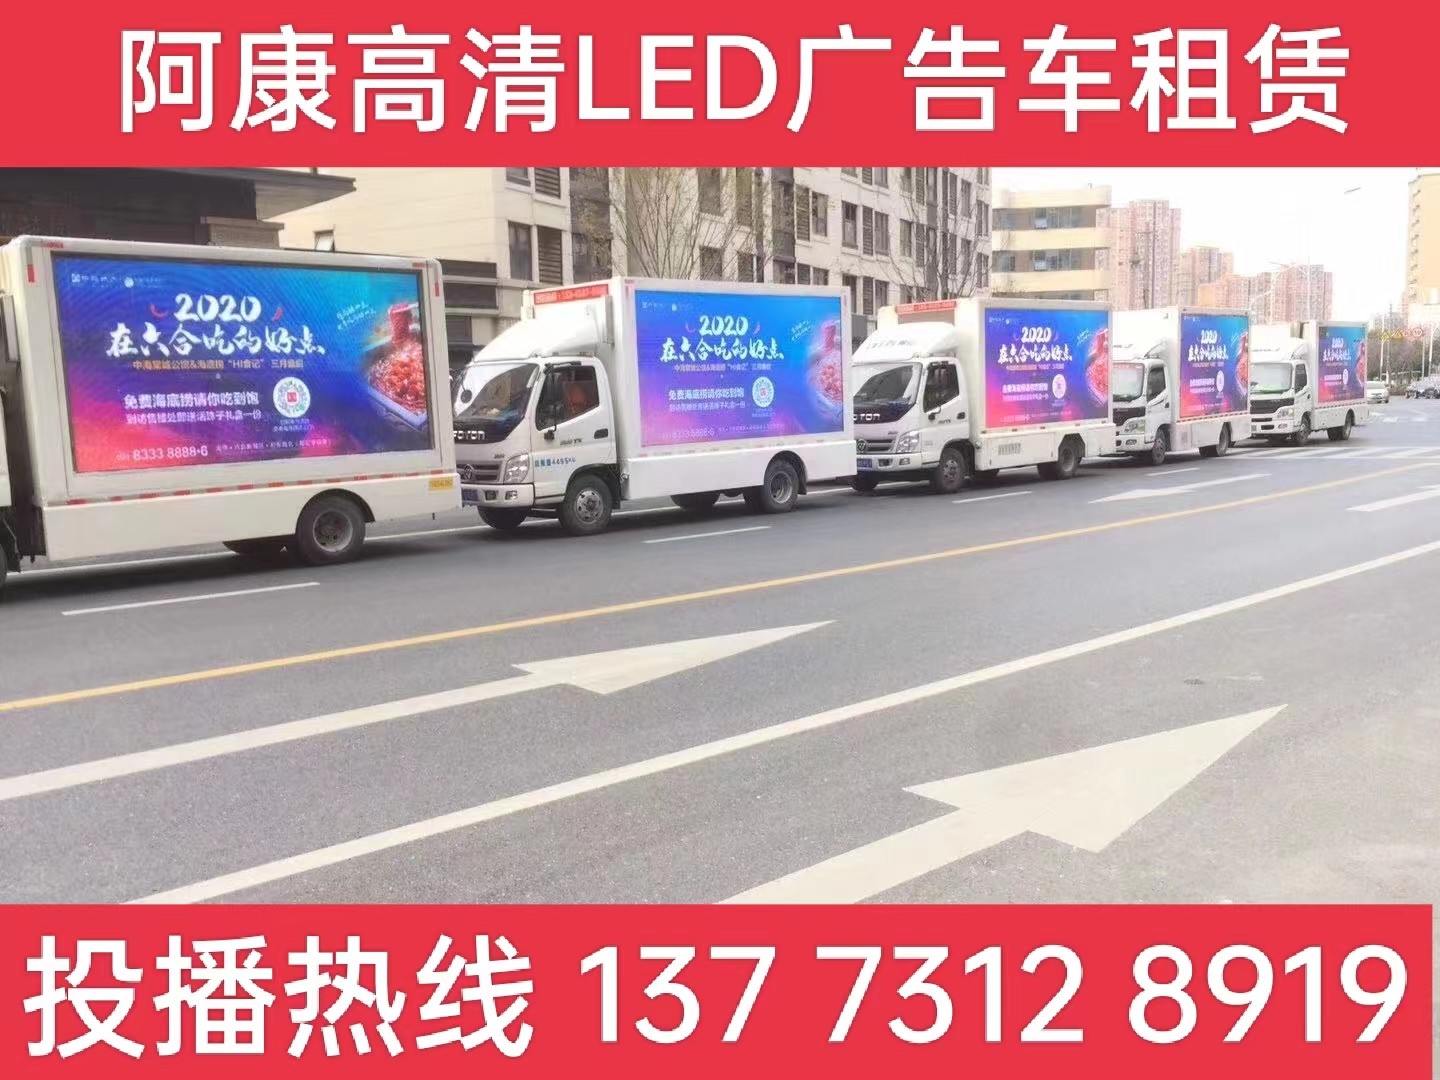 马鞍山宣传车出租-海底捞LED广告